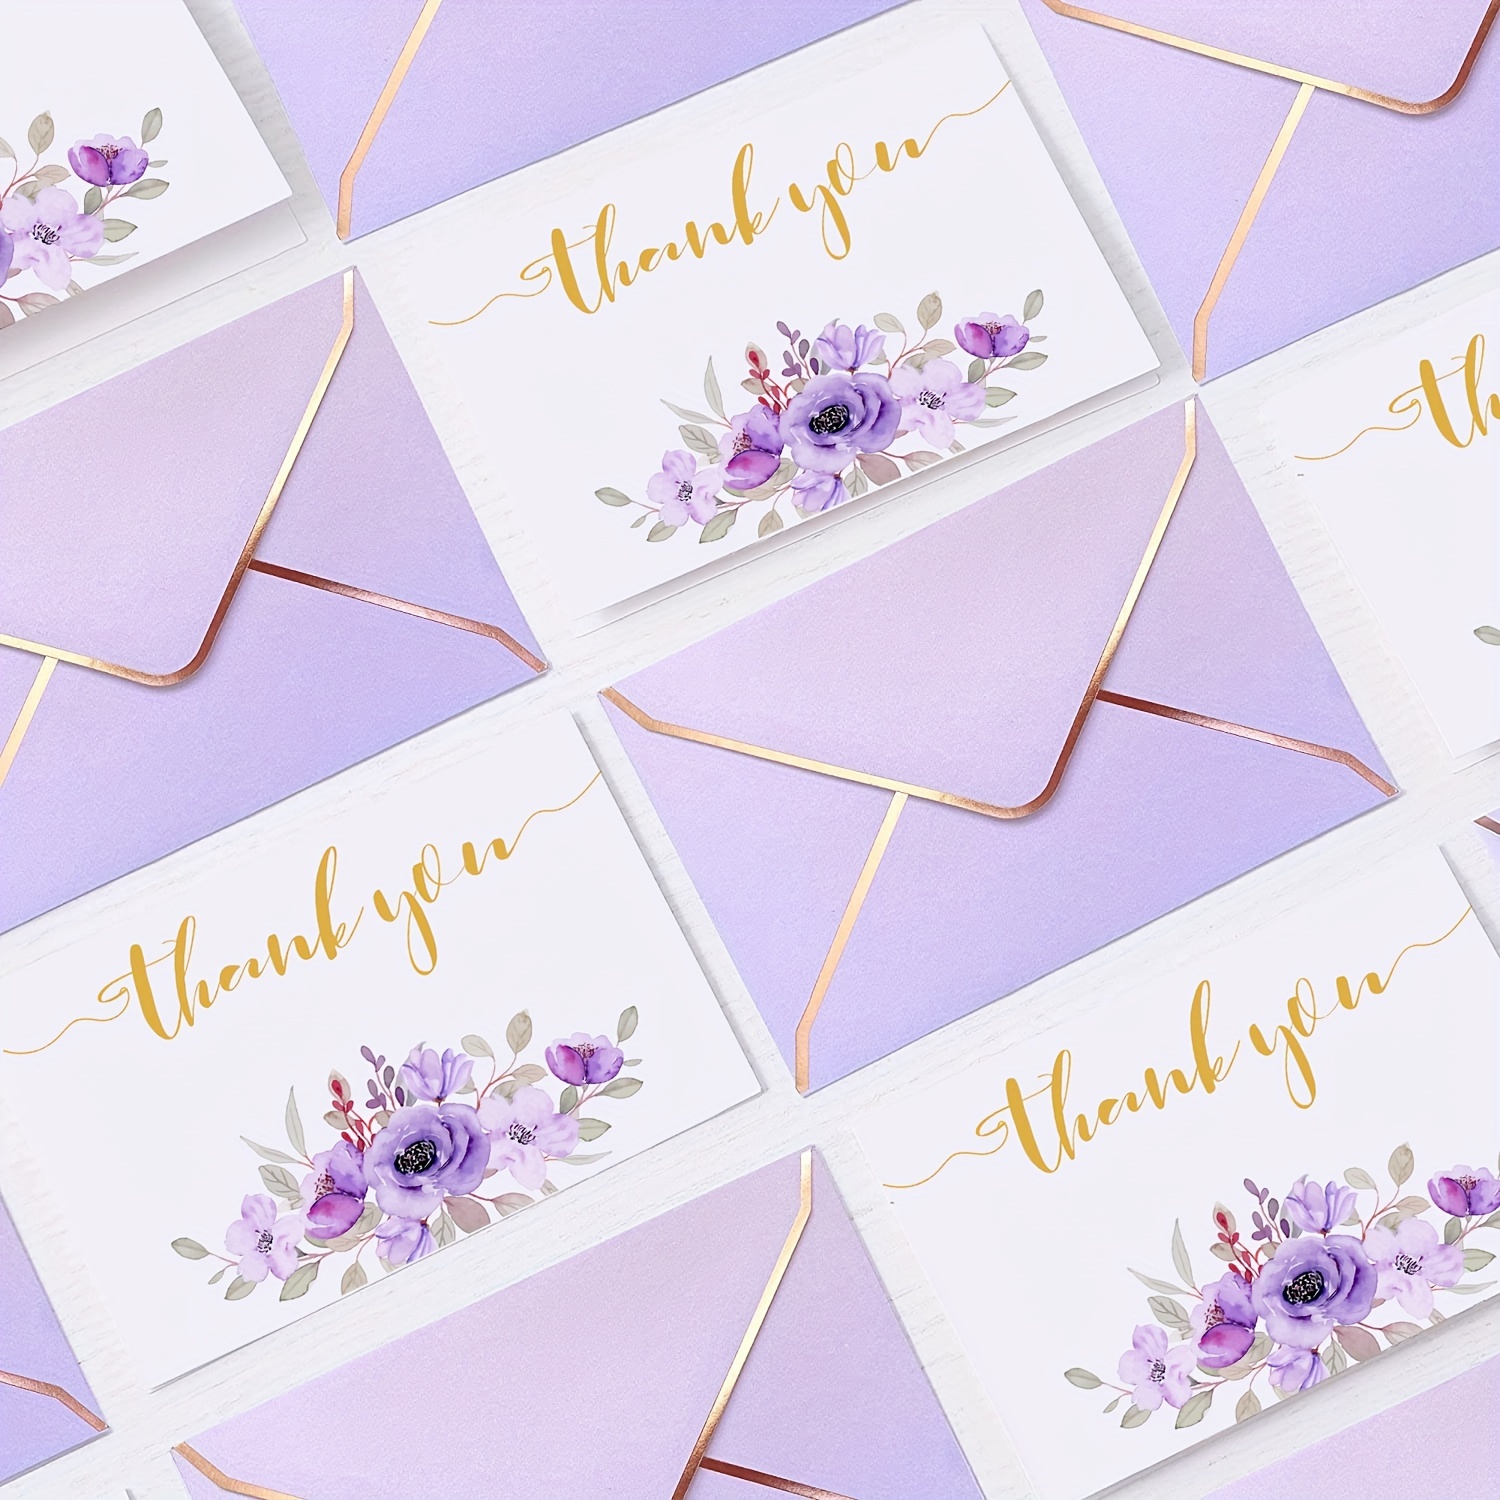 24pcs Mini Envelopes, Mini Gift Card Envelope for Small Note Cards, Purple